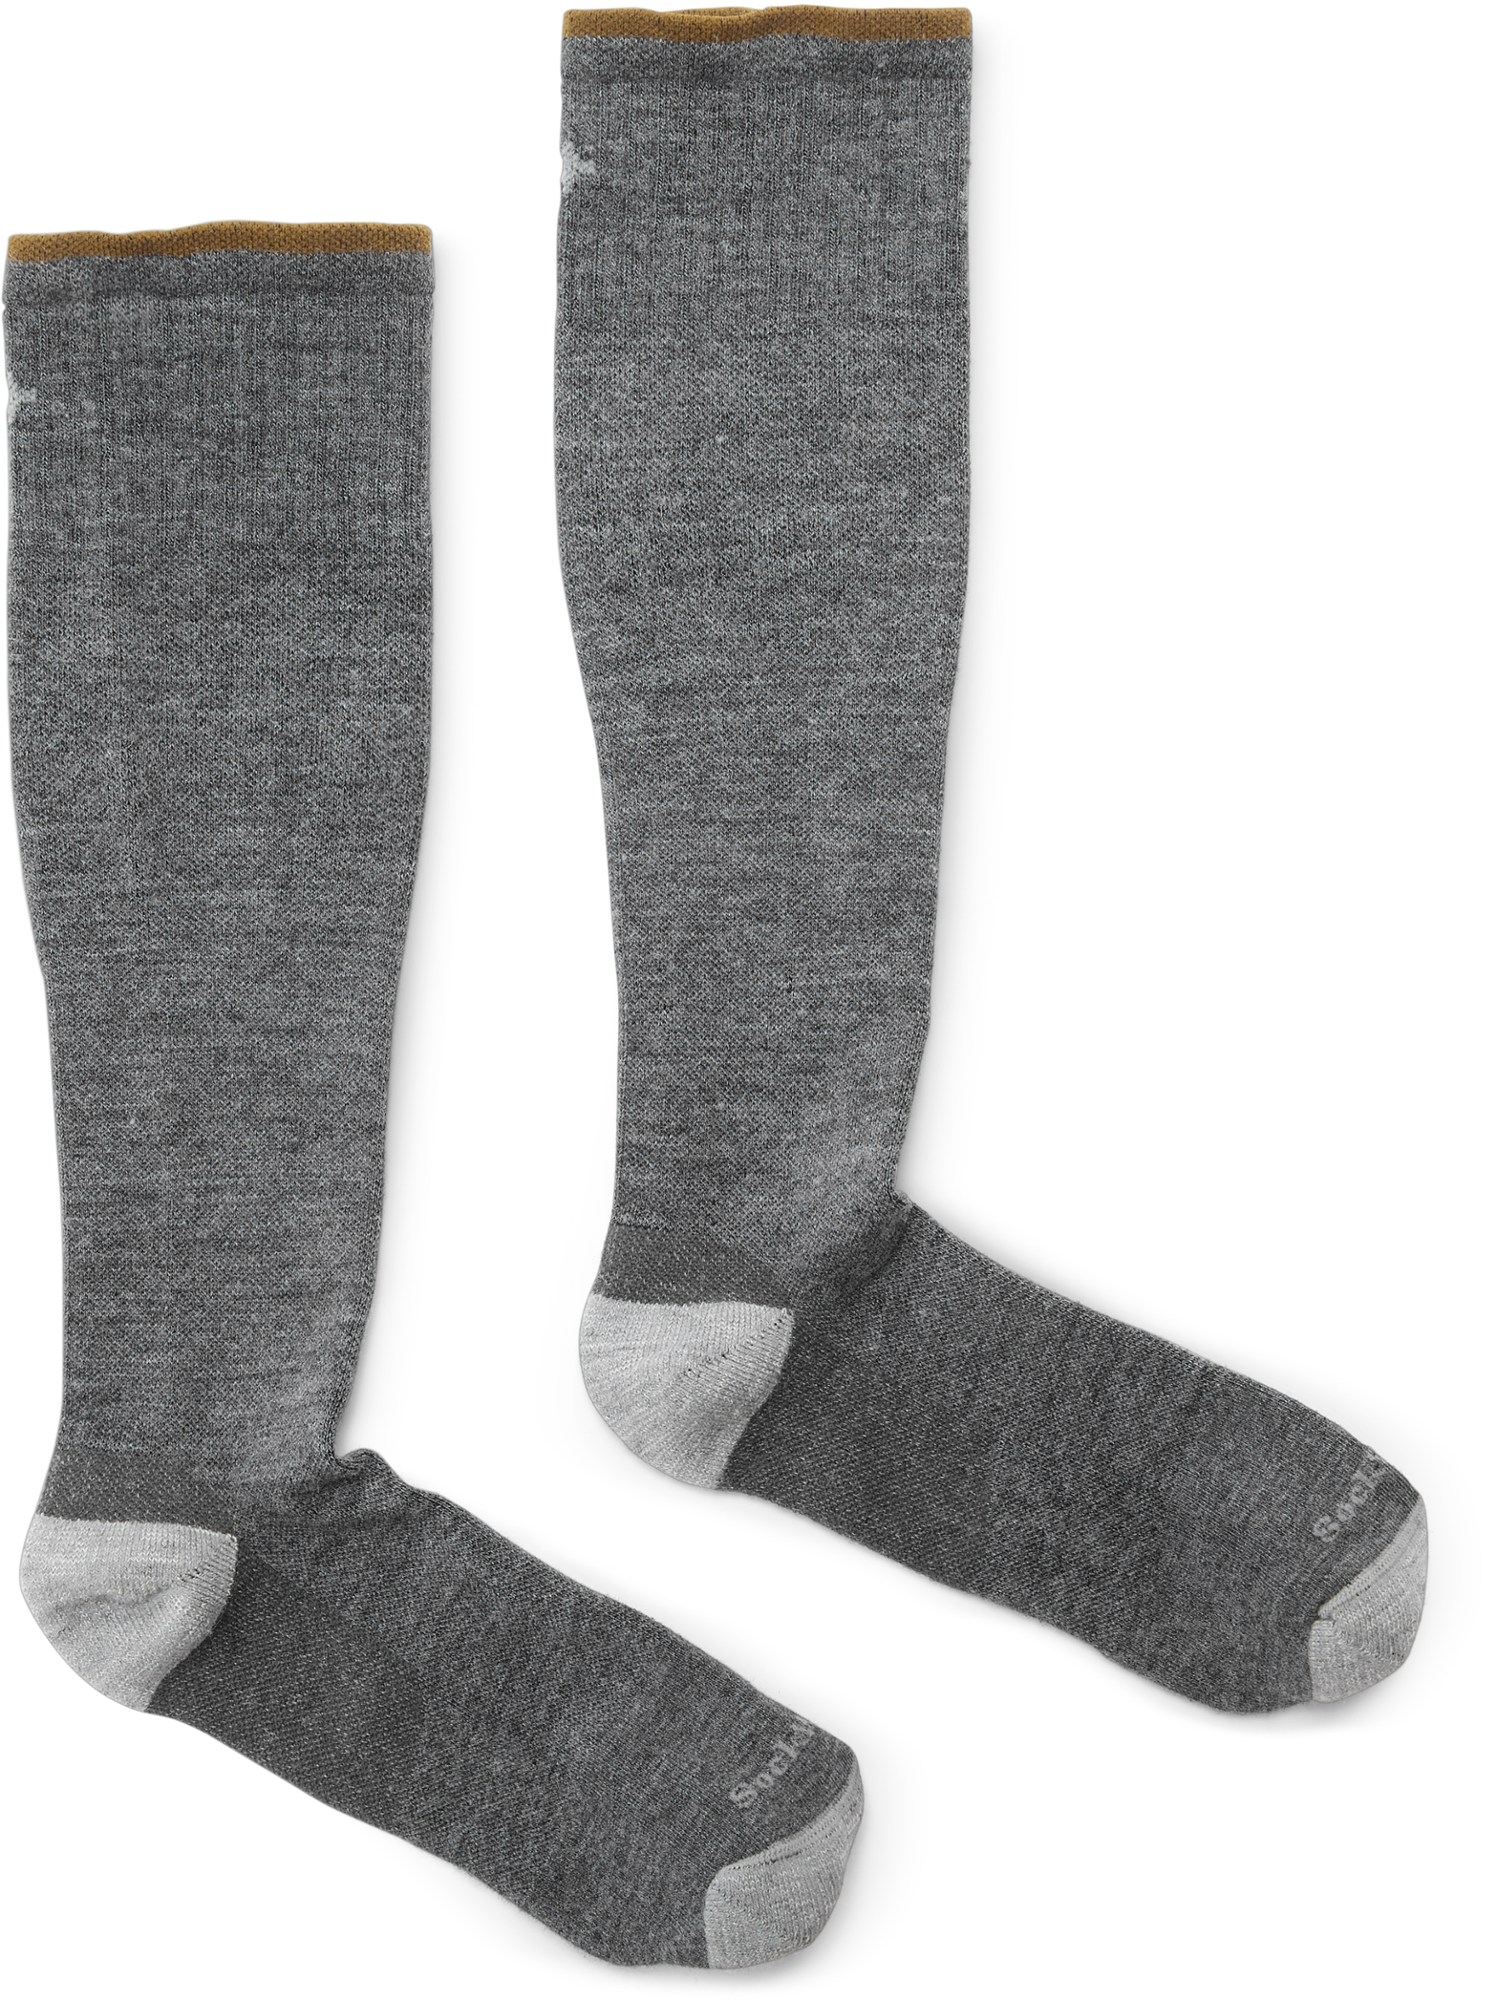 Компрессионные носки Elevation Firm — мужские Sockwell, серый мужские компрессионные носки calcetines компрессионные мужские носки